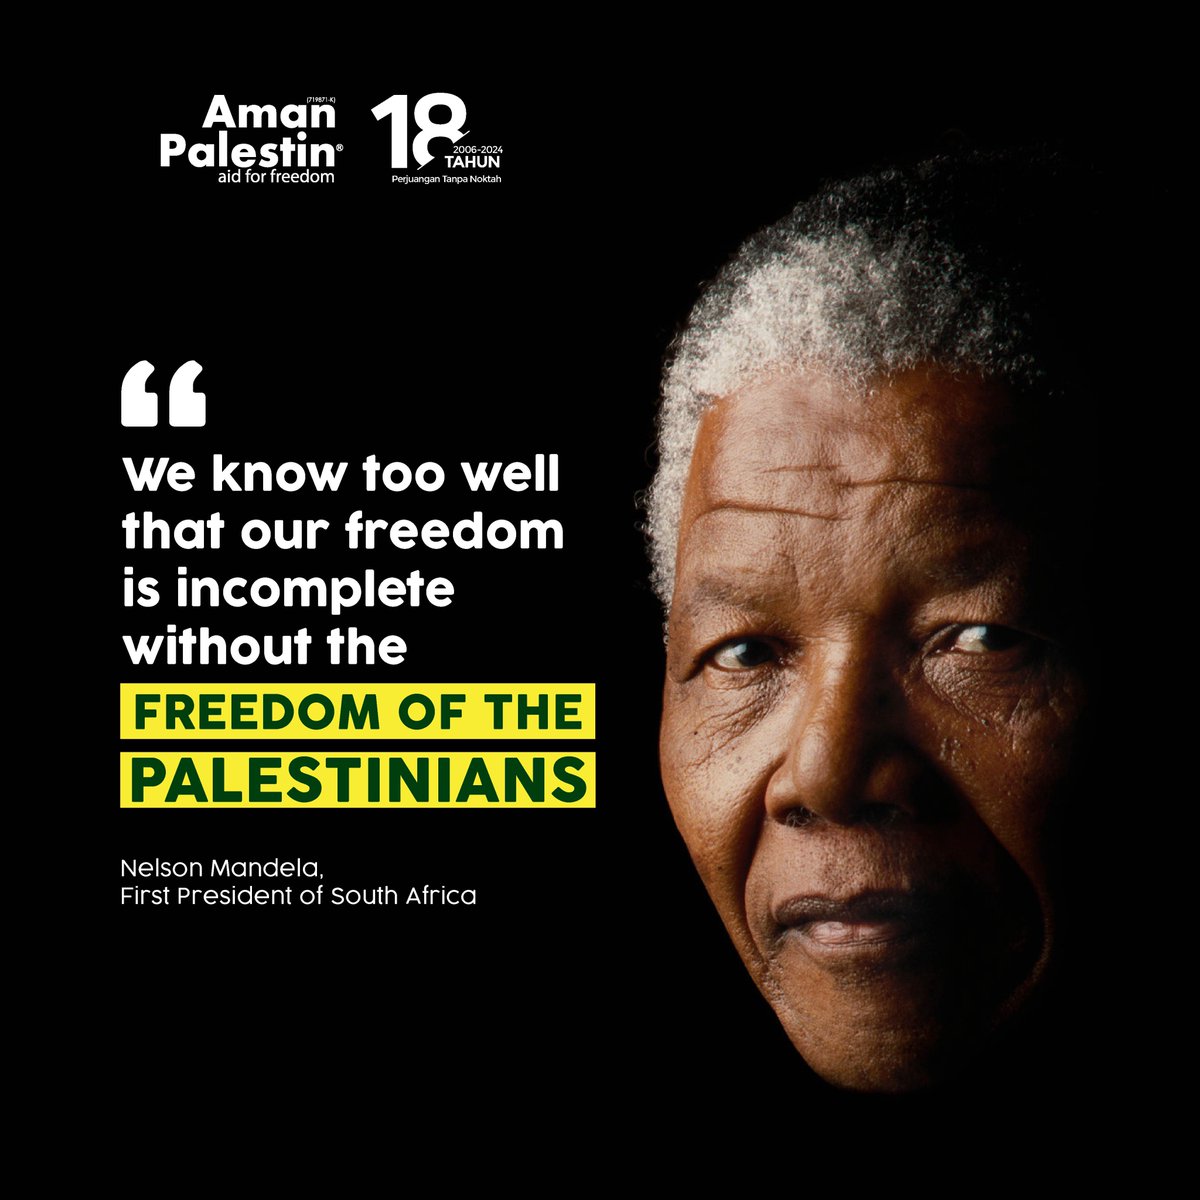 'Kita semua faham bahawa kemerdekaan kita tidak akan lengkap tanpa kemerdekaan rakyat Palestin' - Nelson Mandela, Presiden Pertama Afrika Selatan #AmanPalestin #TaufanAlAqsa #TaufanBangkitMenghancurkan